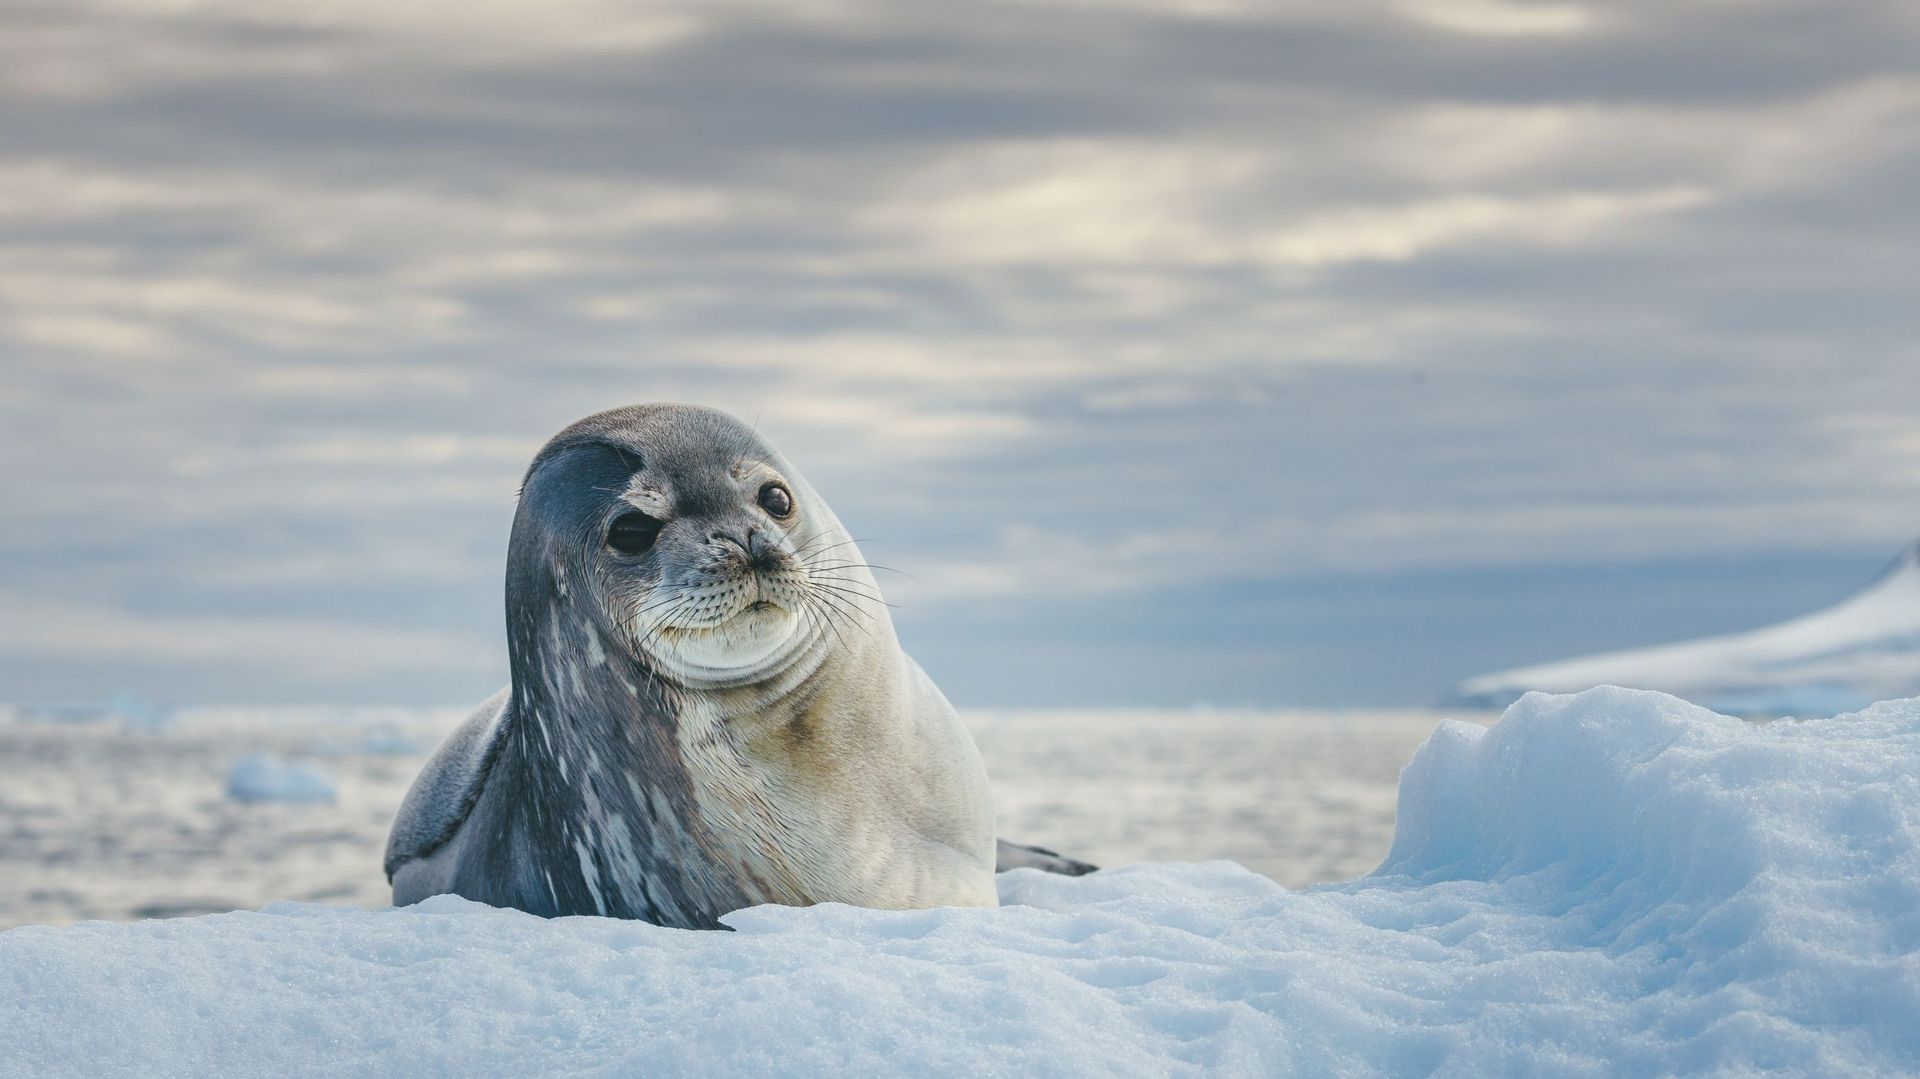 Insolite : 16 animaux marins transparents qui n'ont rien à cacher 